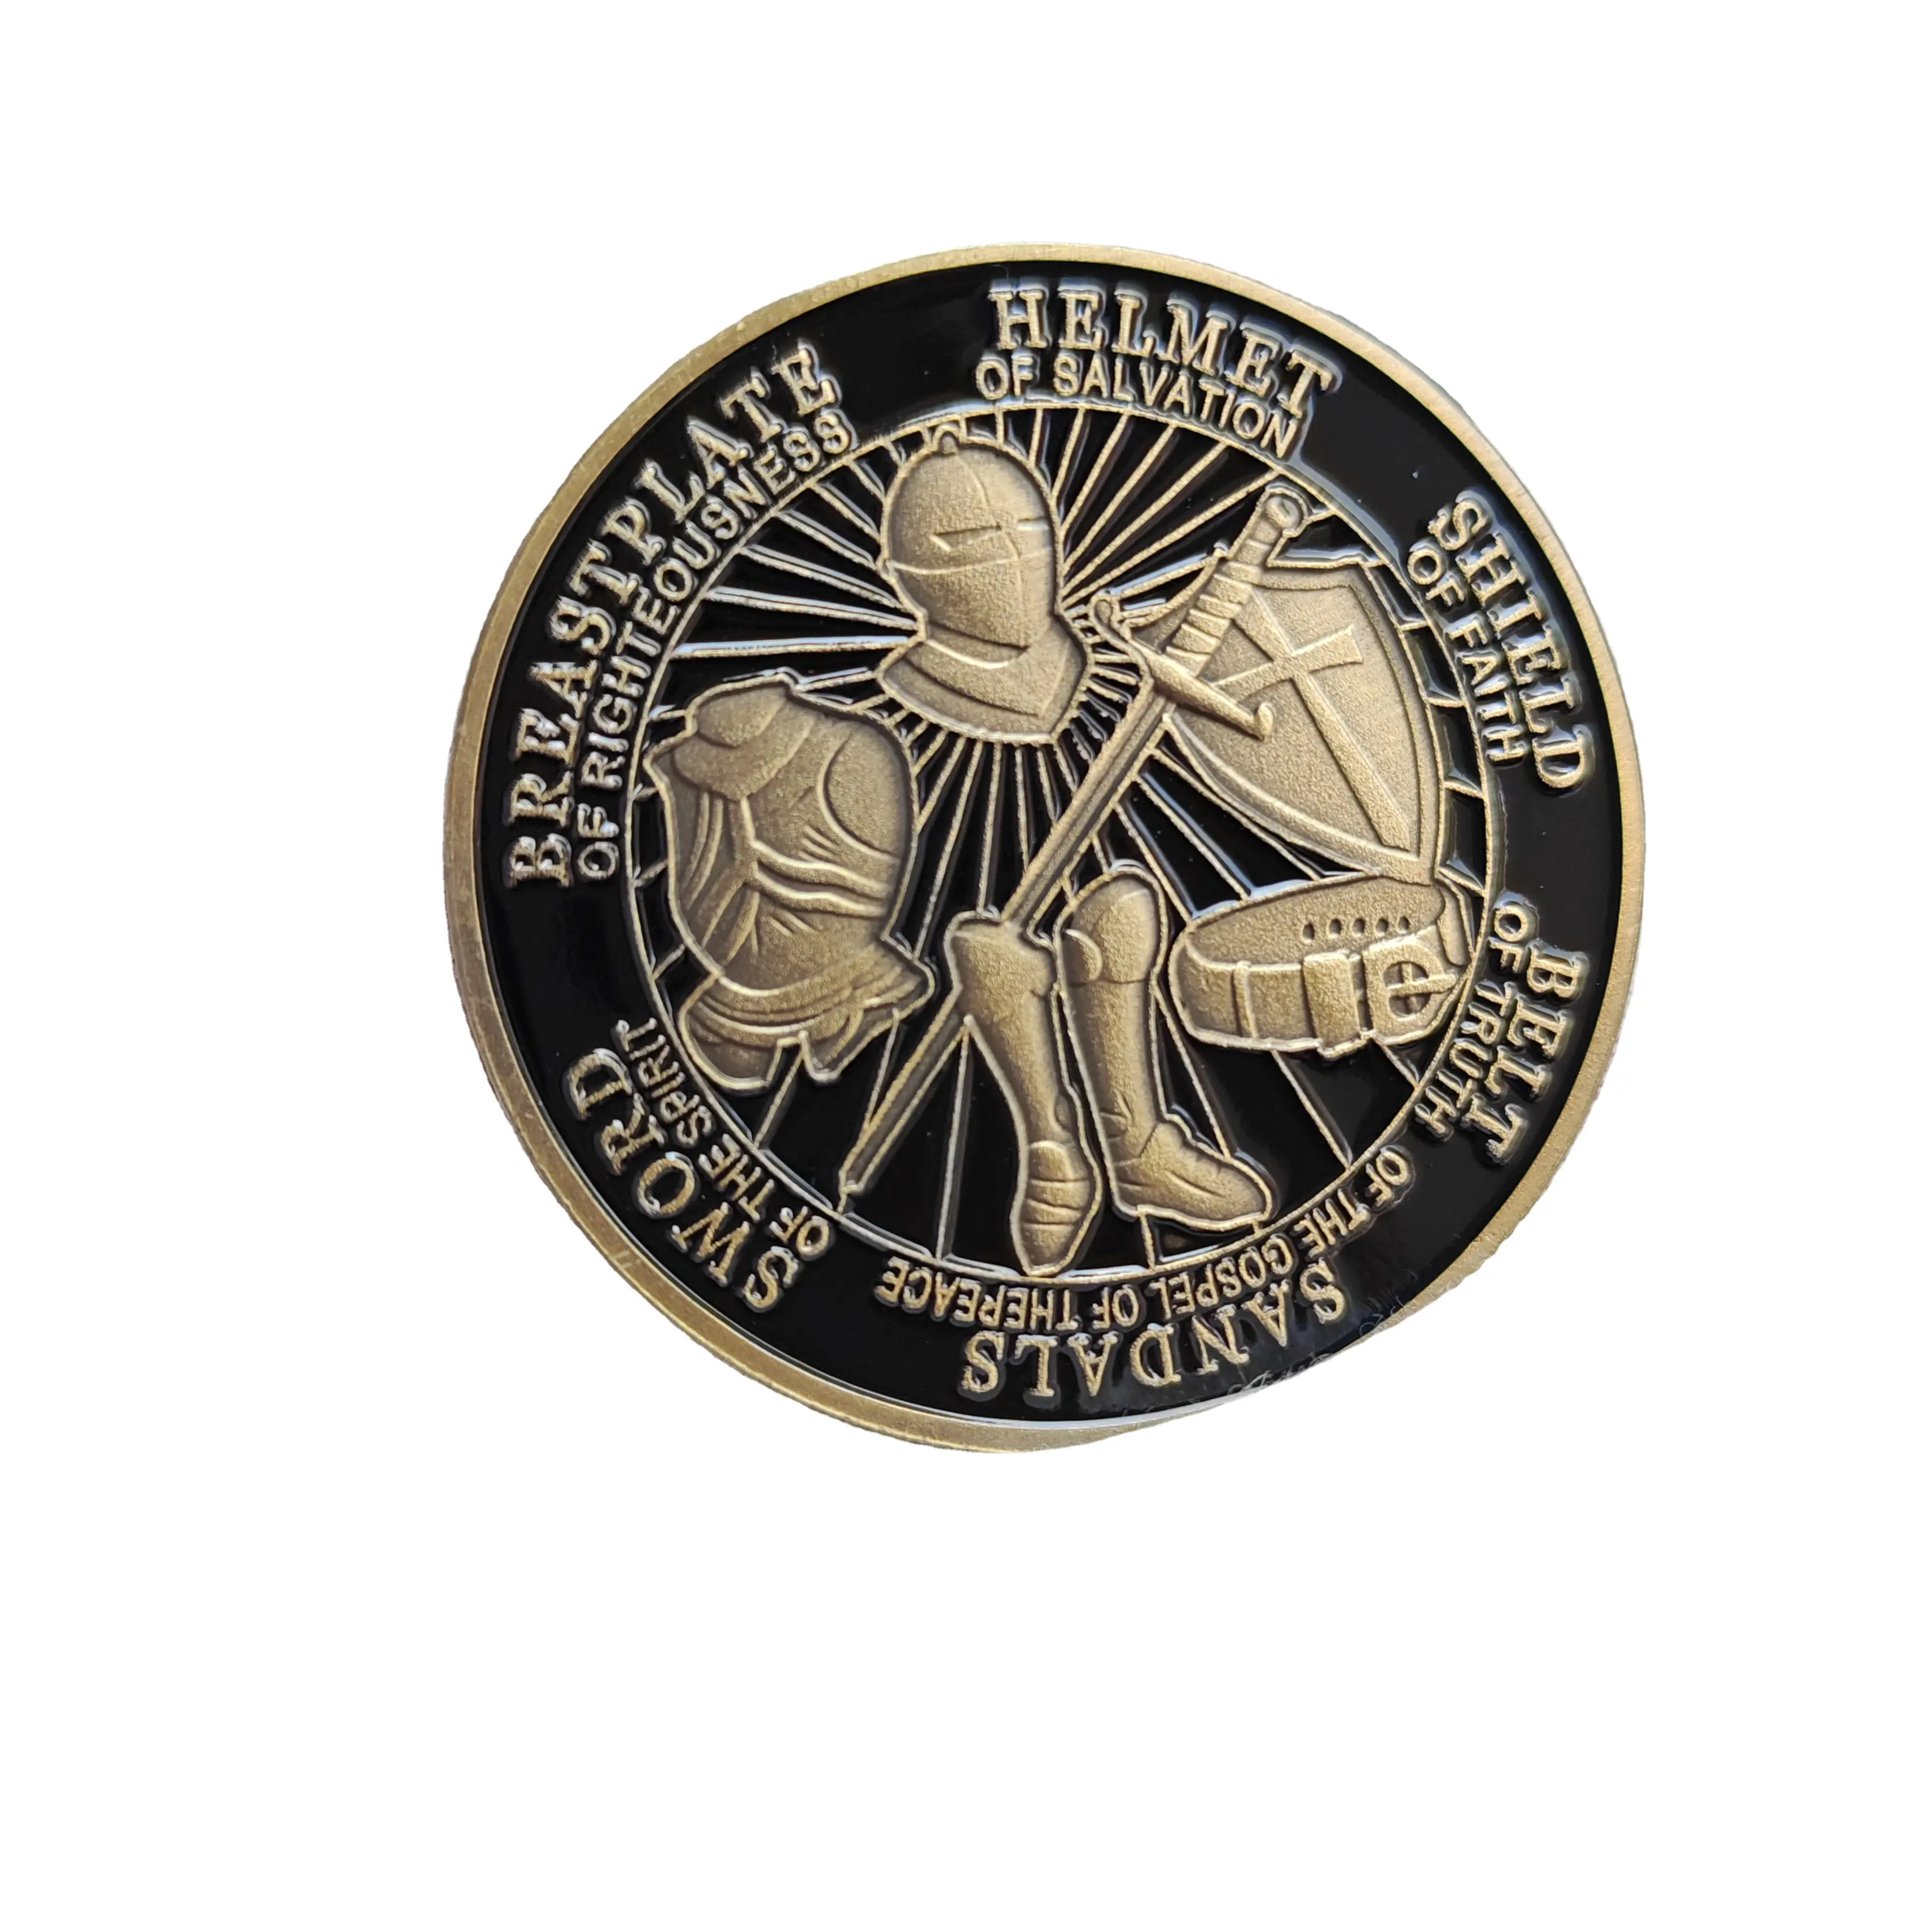 Collezione di monete commemorative in bronzo armatura lucida medaglione commemorativo